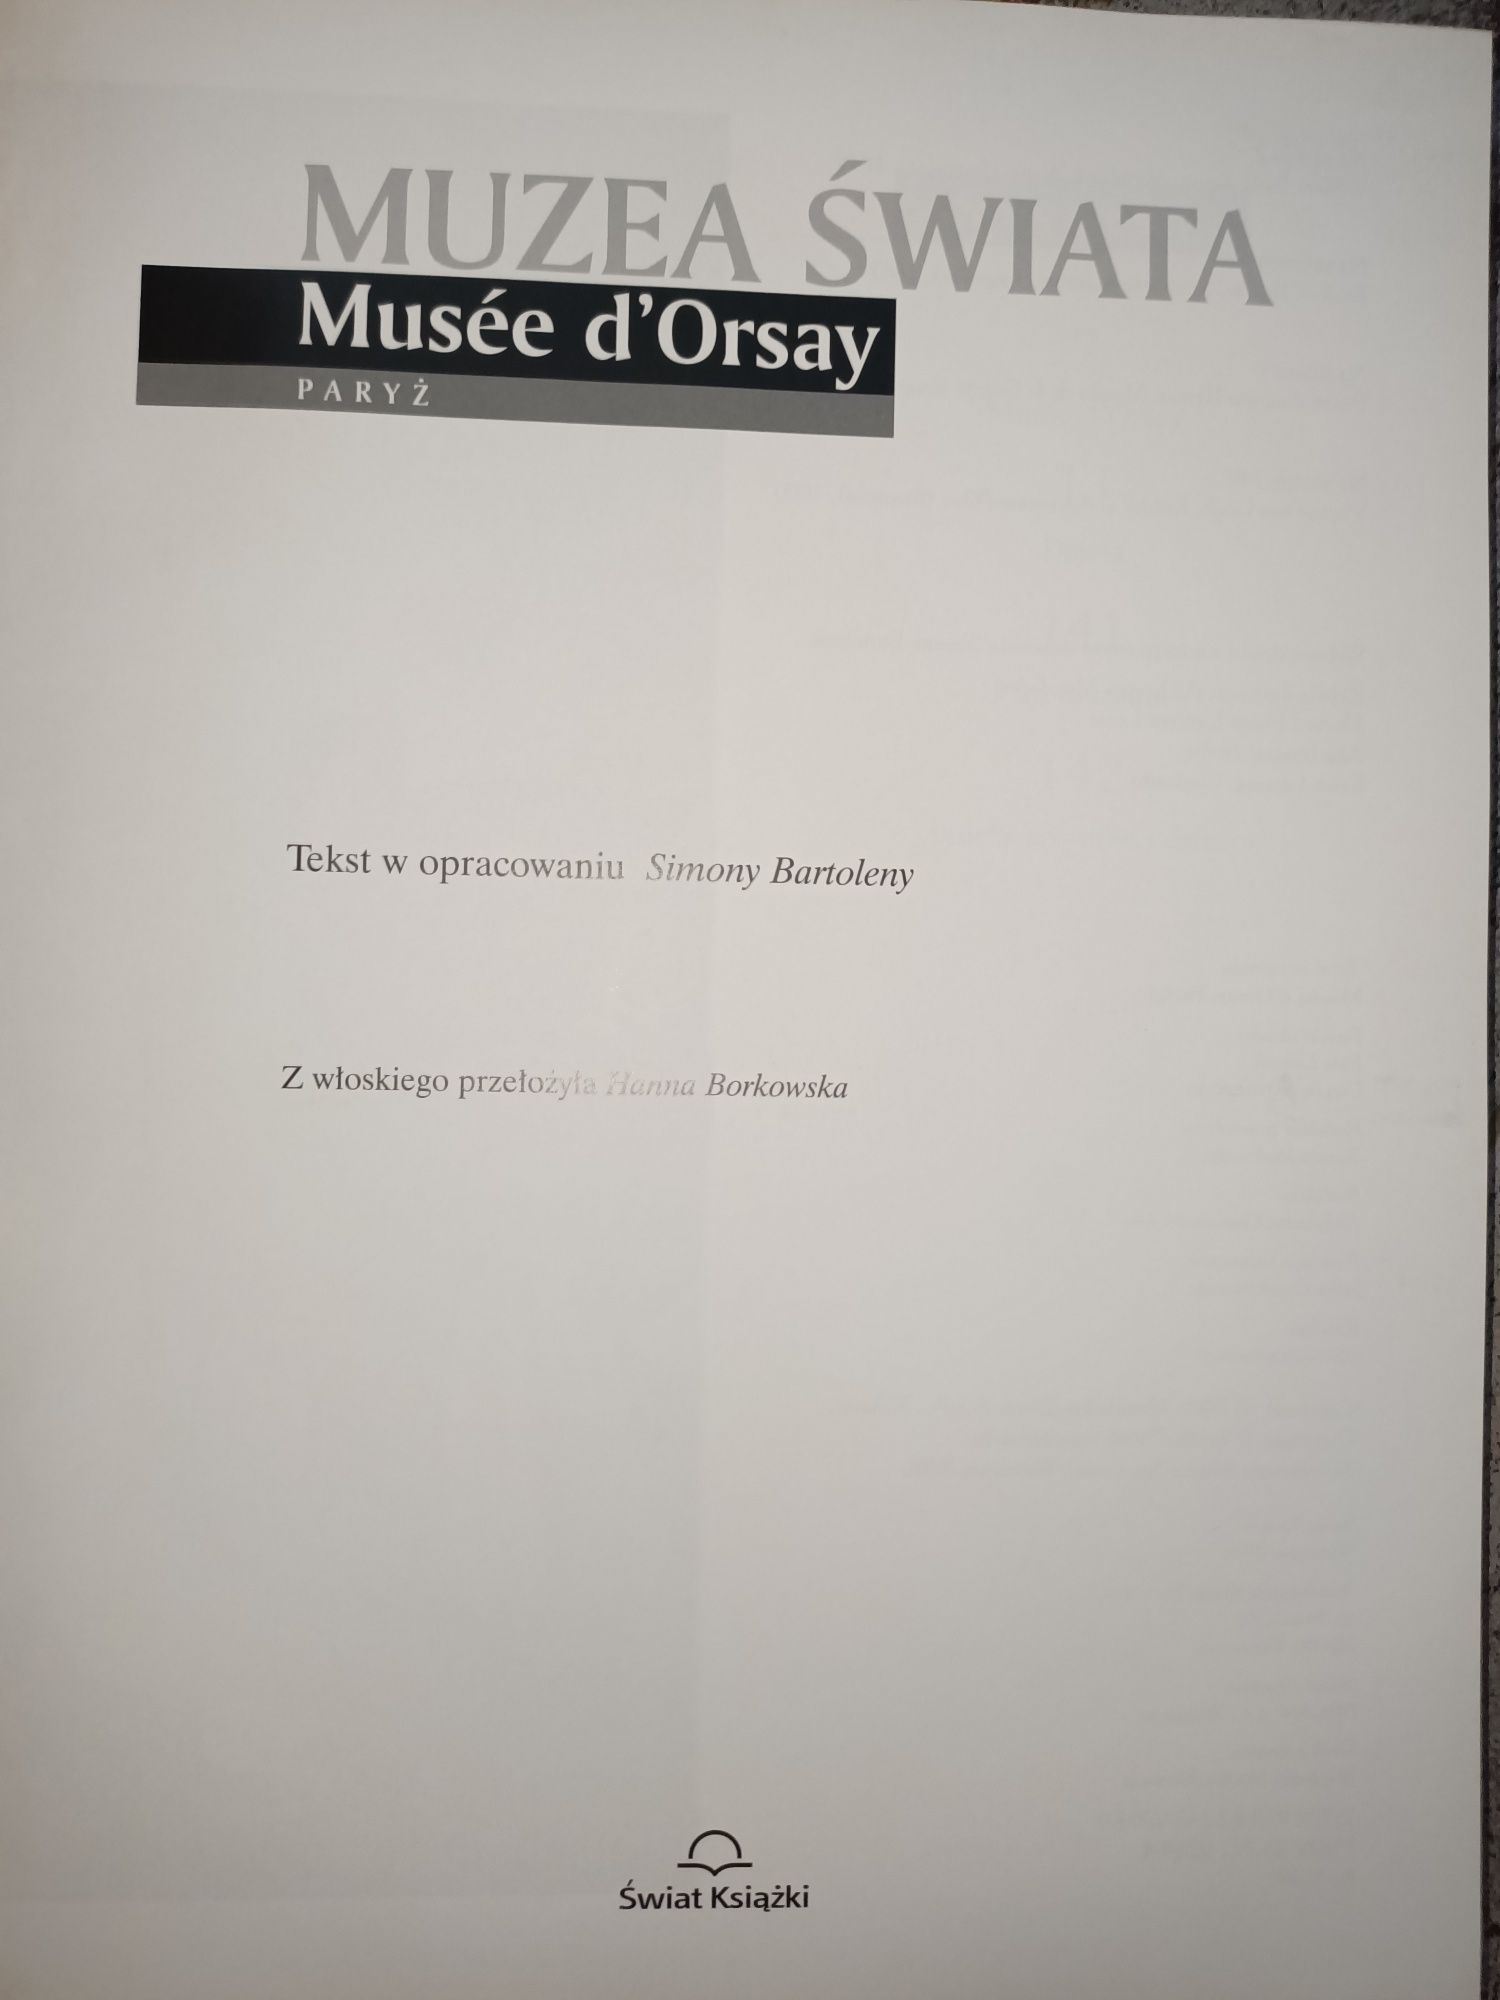 2 x Muzea Świata Pinakoteka Brera i Musee dOrsay